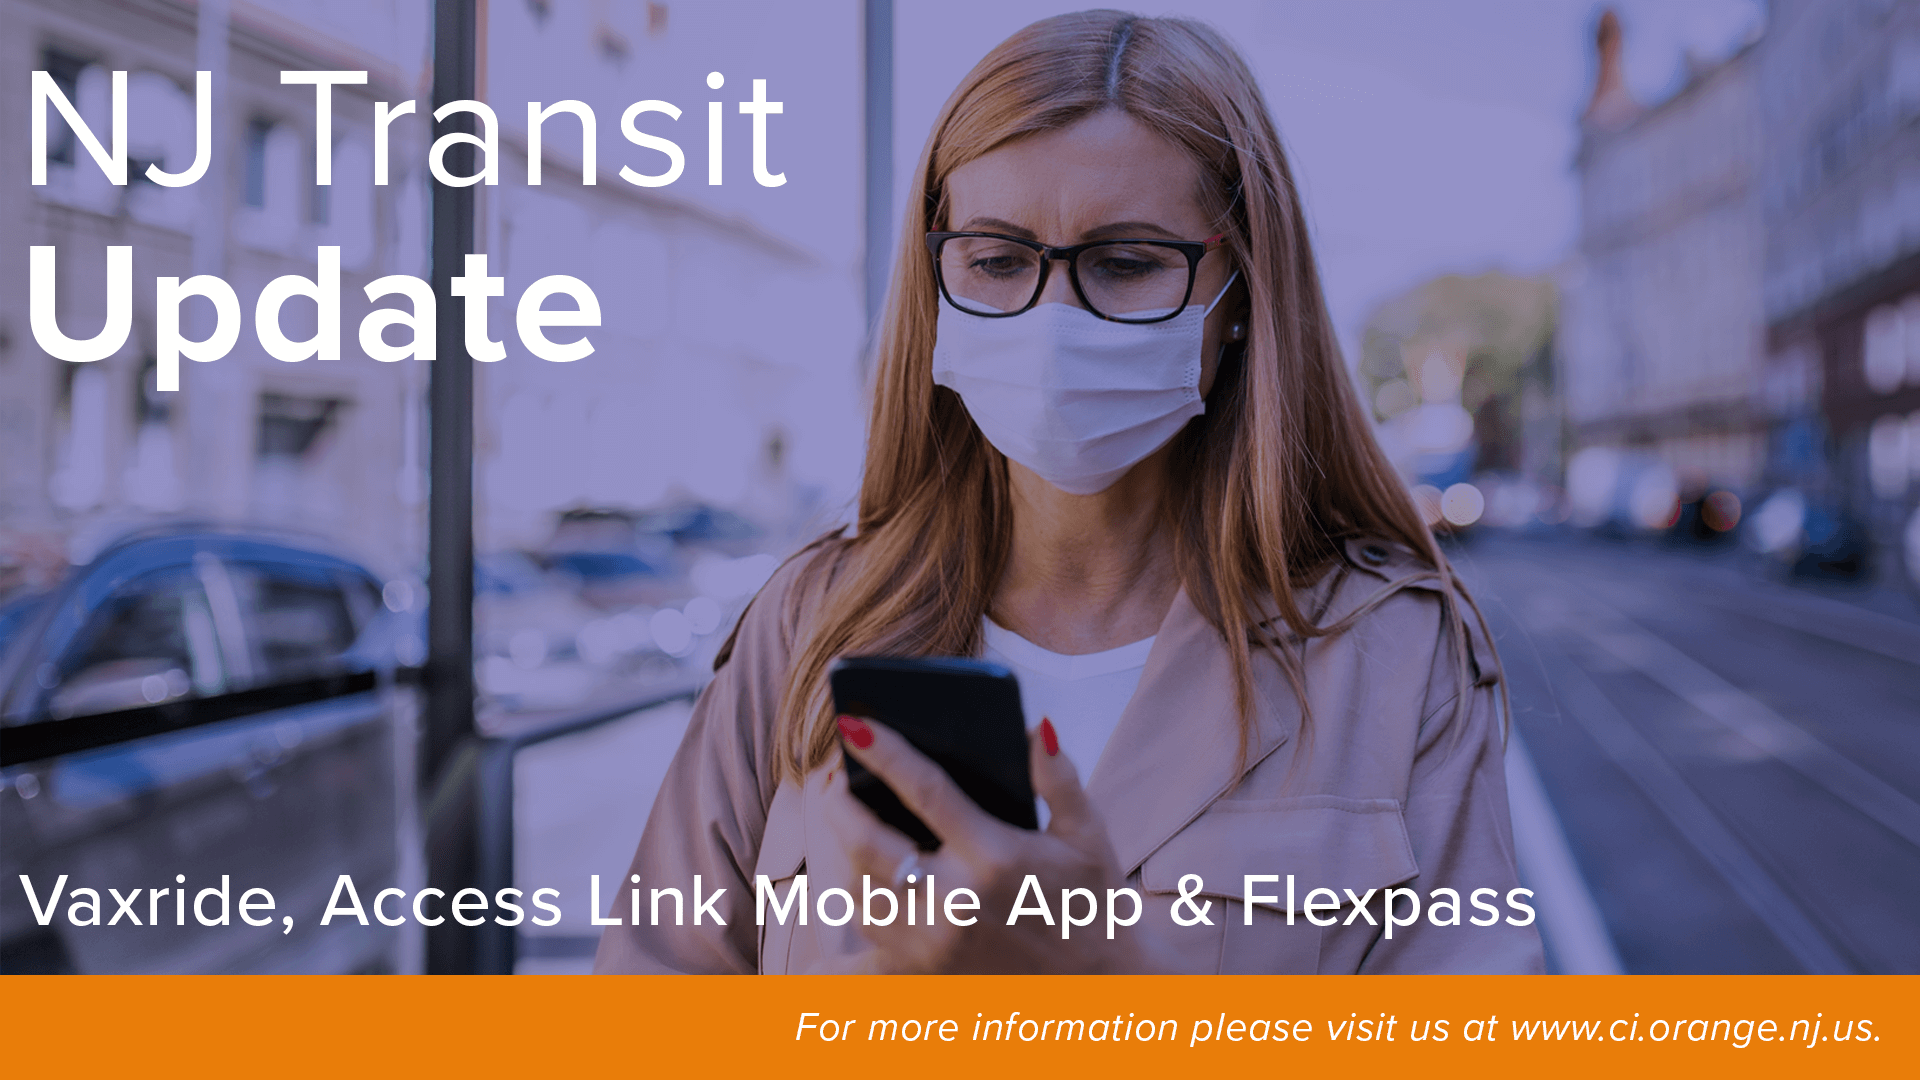 nj-transit-update-vaxride-access-link-mobile-app-flexpass-orange-city-council